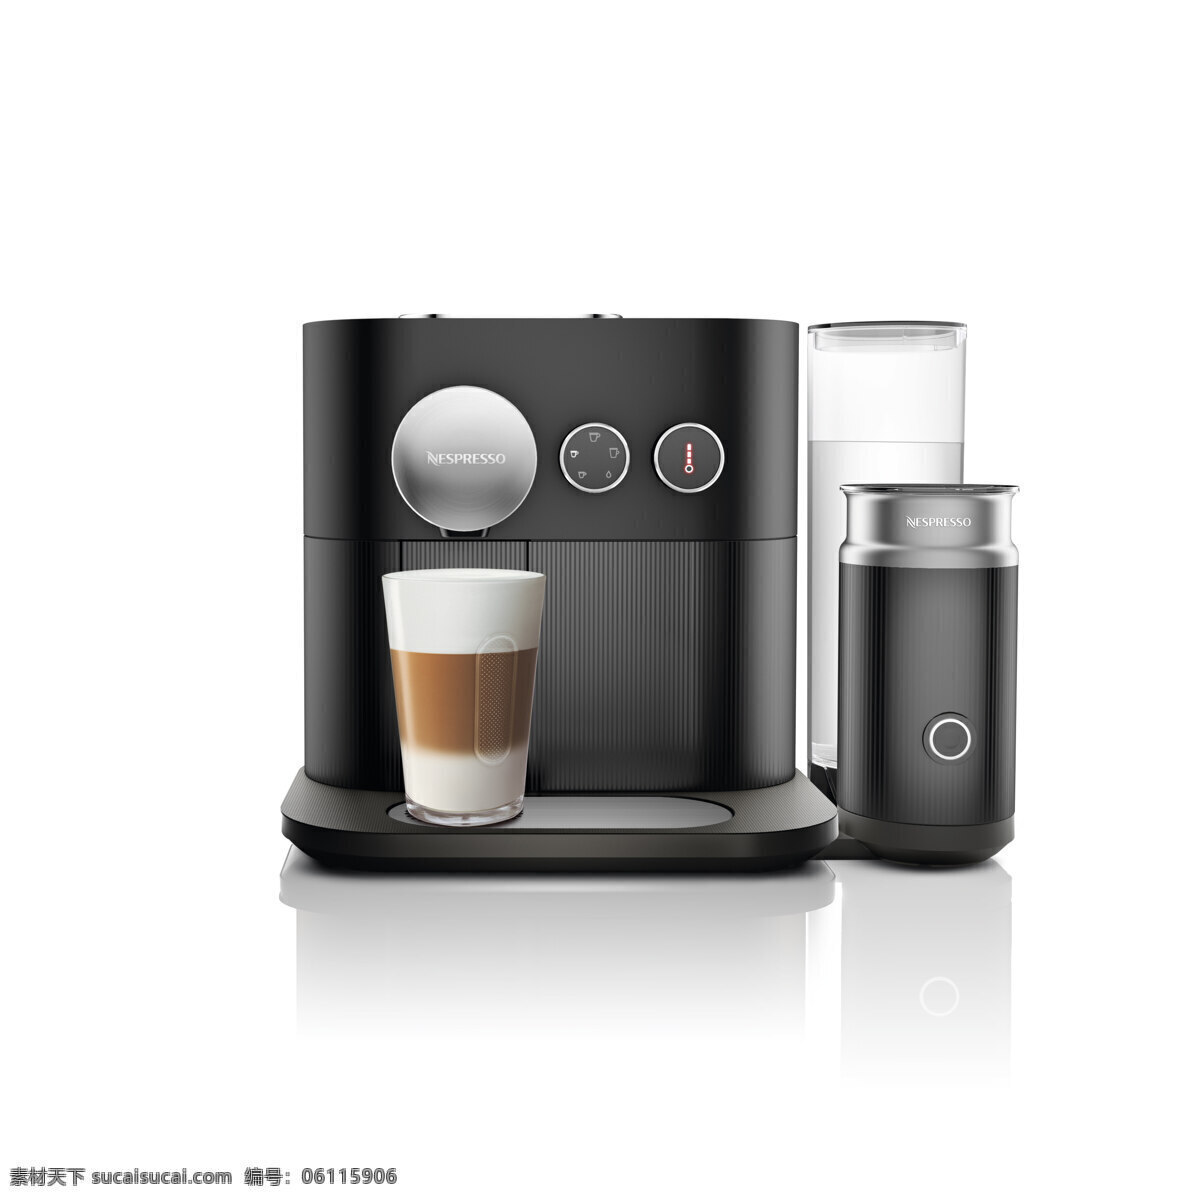 小型 家用 咖啡机 电器元素 工业元素 家用咖啡机 咖啡 咖啡机设计 生活百科